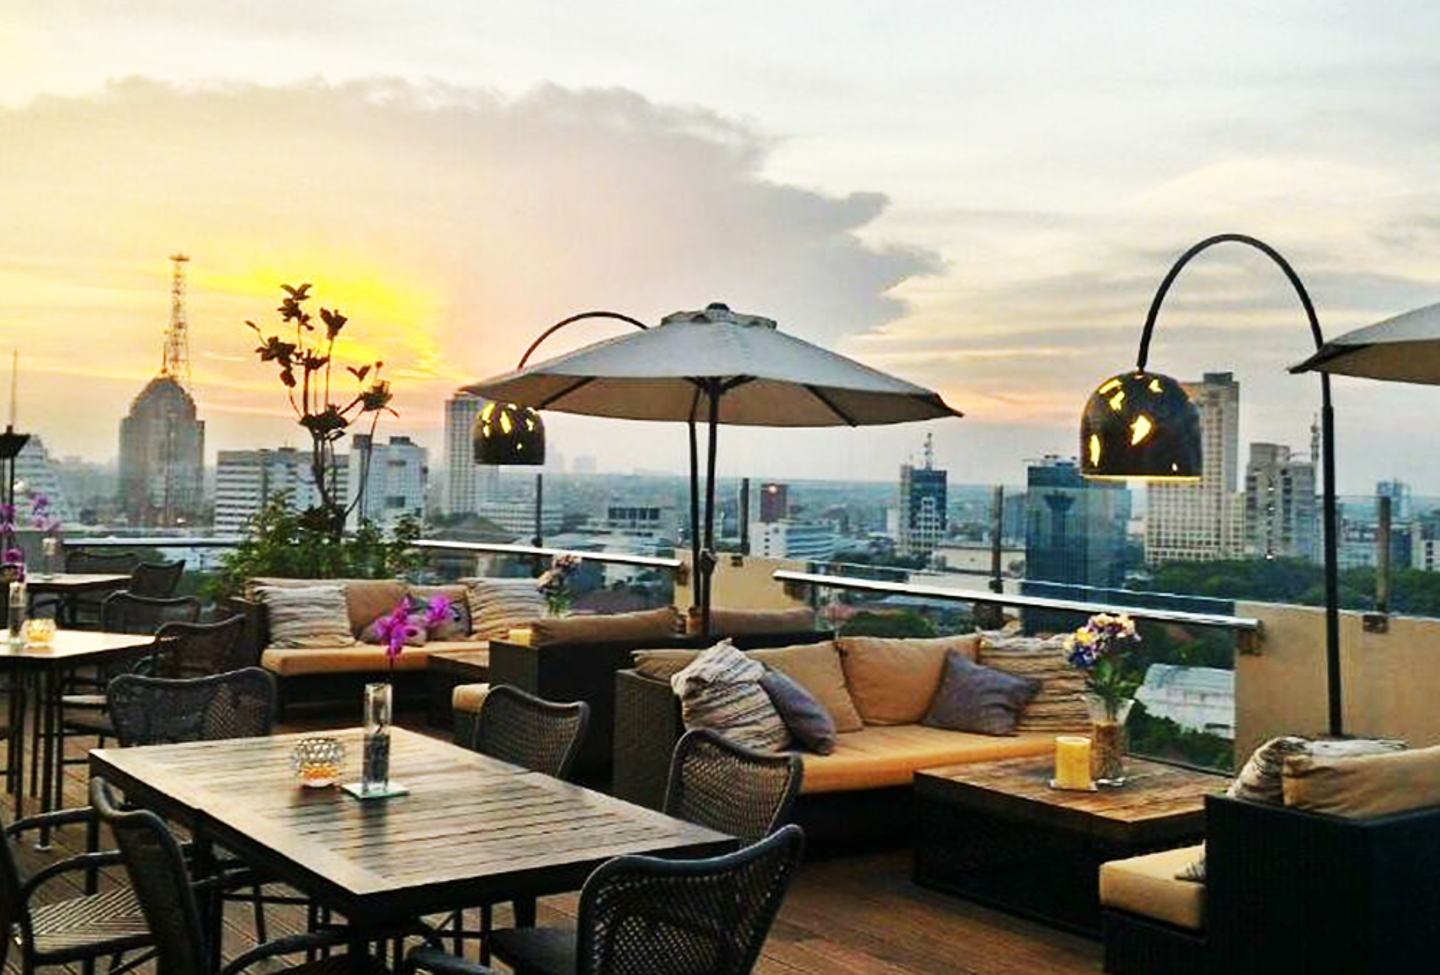 8 Restoran Dengan View Outdoor Paling Seru Di Surabaya